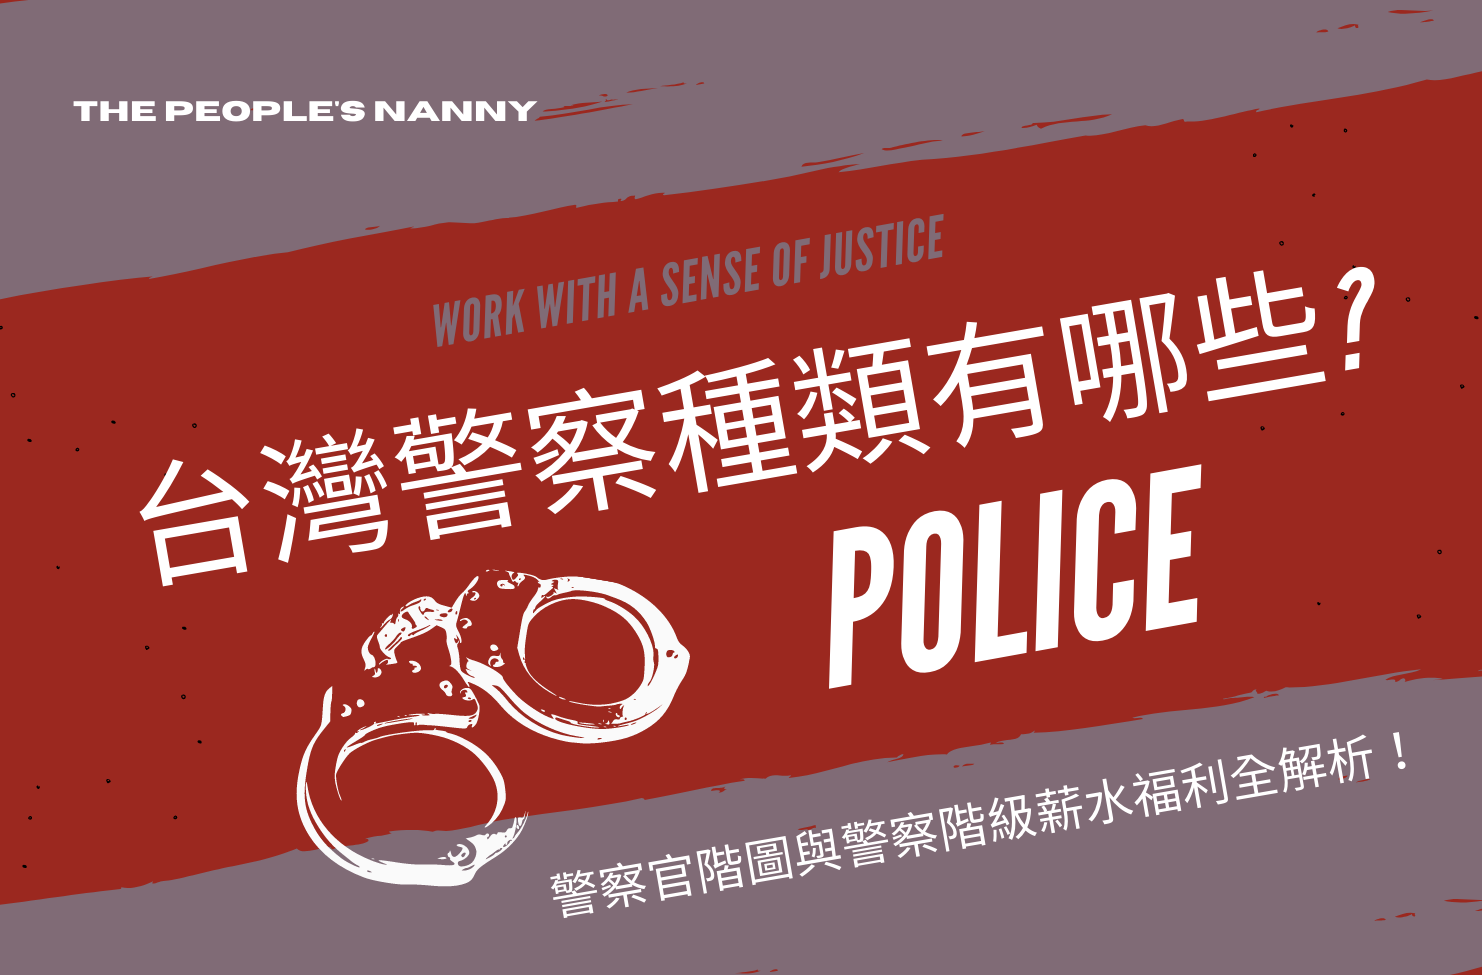 台灣警察種類有哪些 警察官階圖與警察階級薪水福利全解析 保成學儒公職補習班